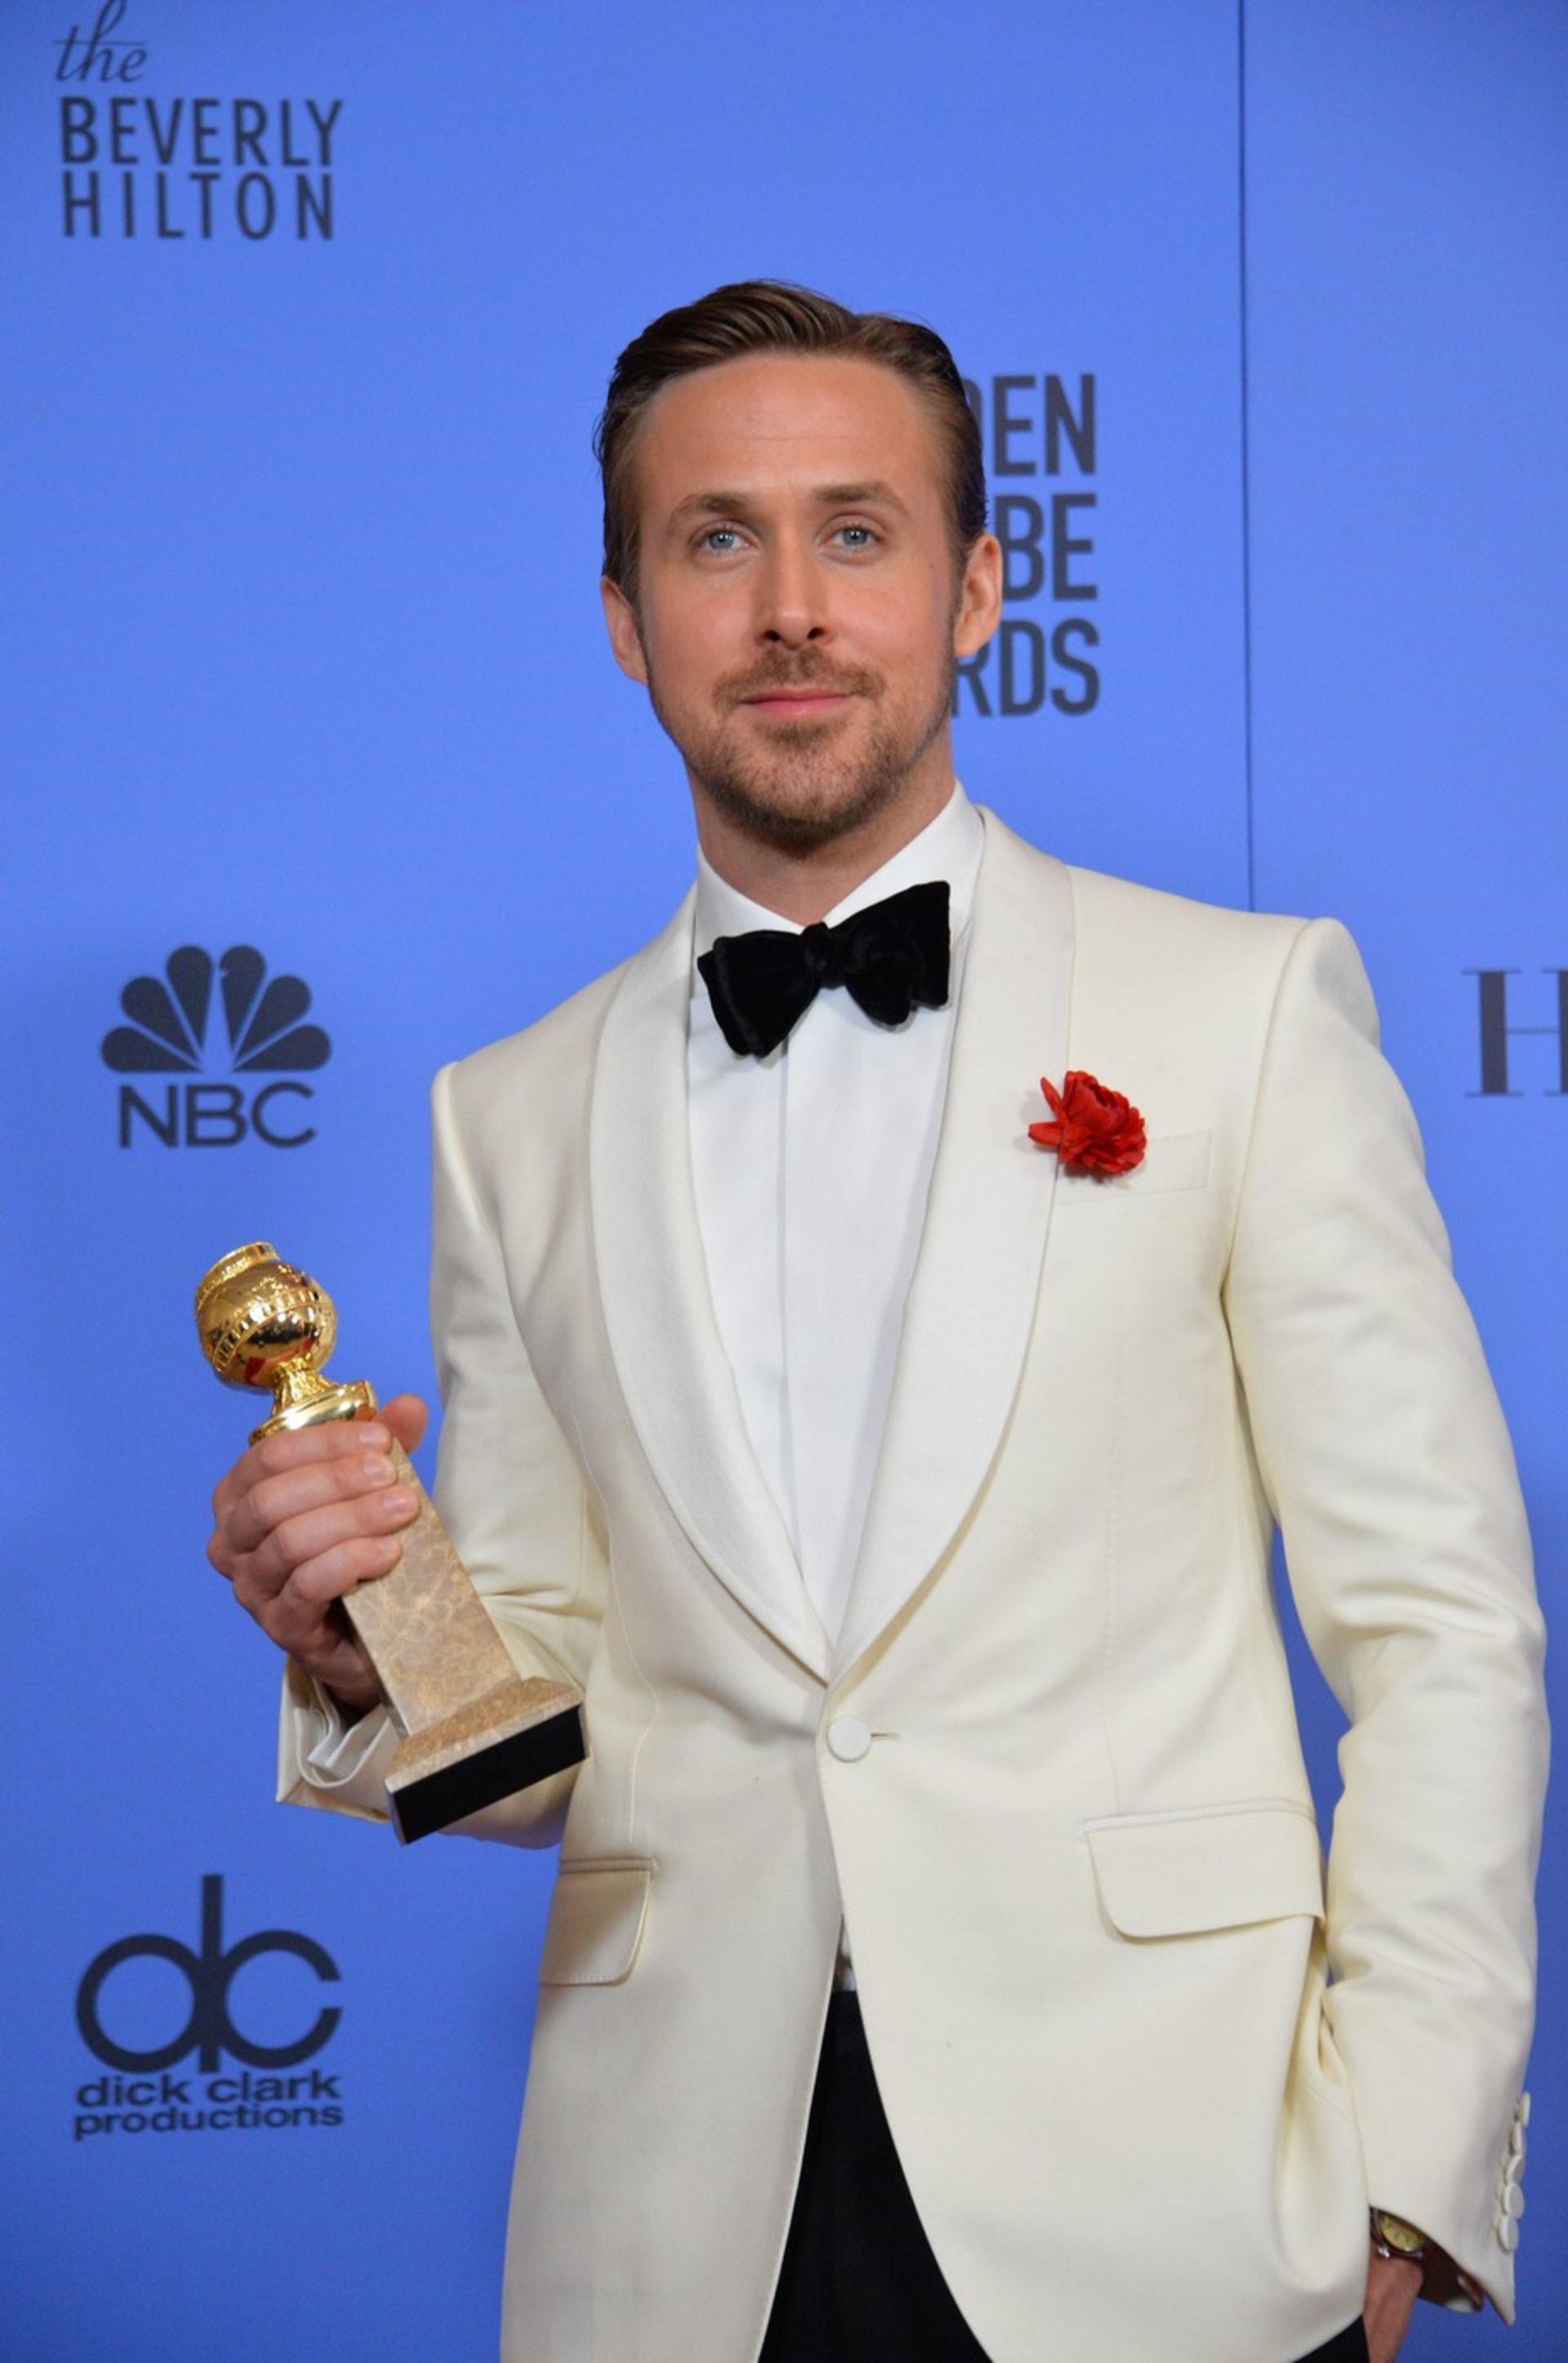 A Ryan Gosling jí za to vysekl poklonu, když v roce 2017 vyhrál Zlatý glóbus.